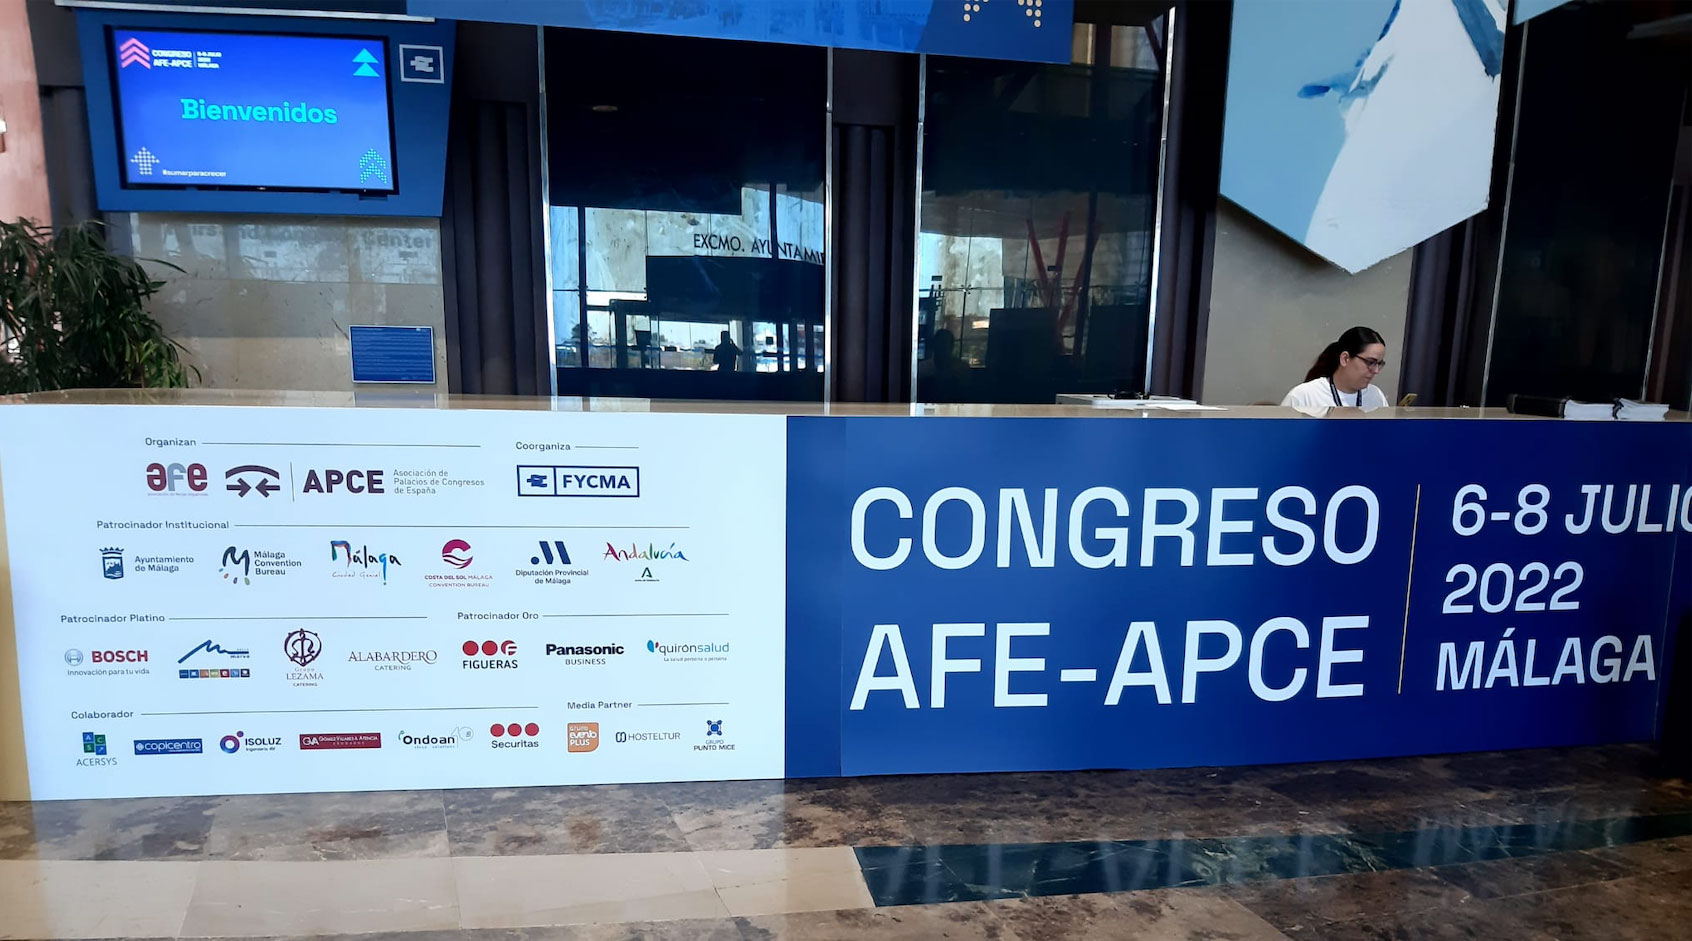 ONDOAN patrocina el congreso AFE-ACPE, principal punto de encuentro del sector ferial y congresual